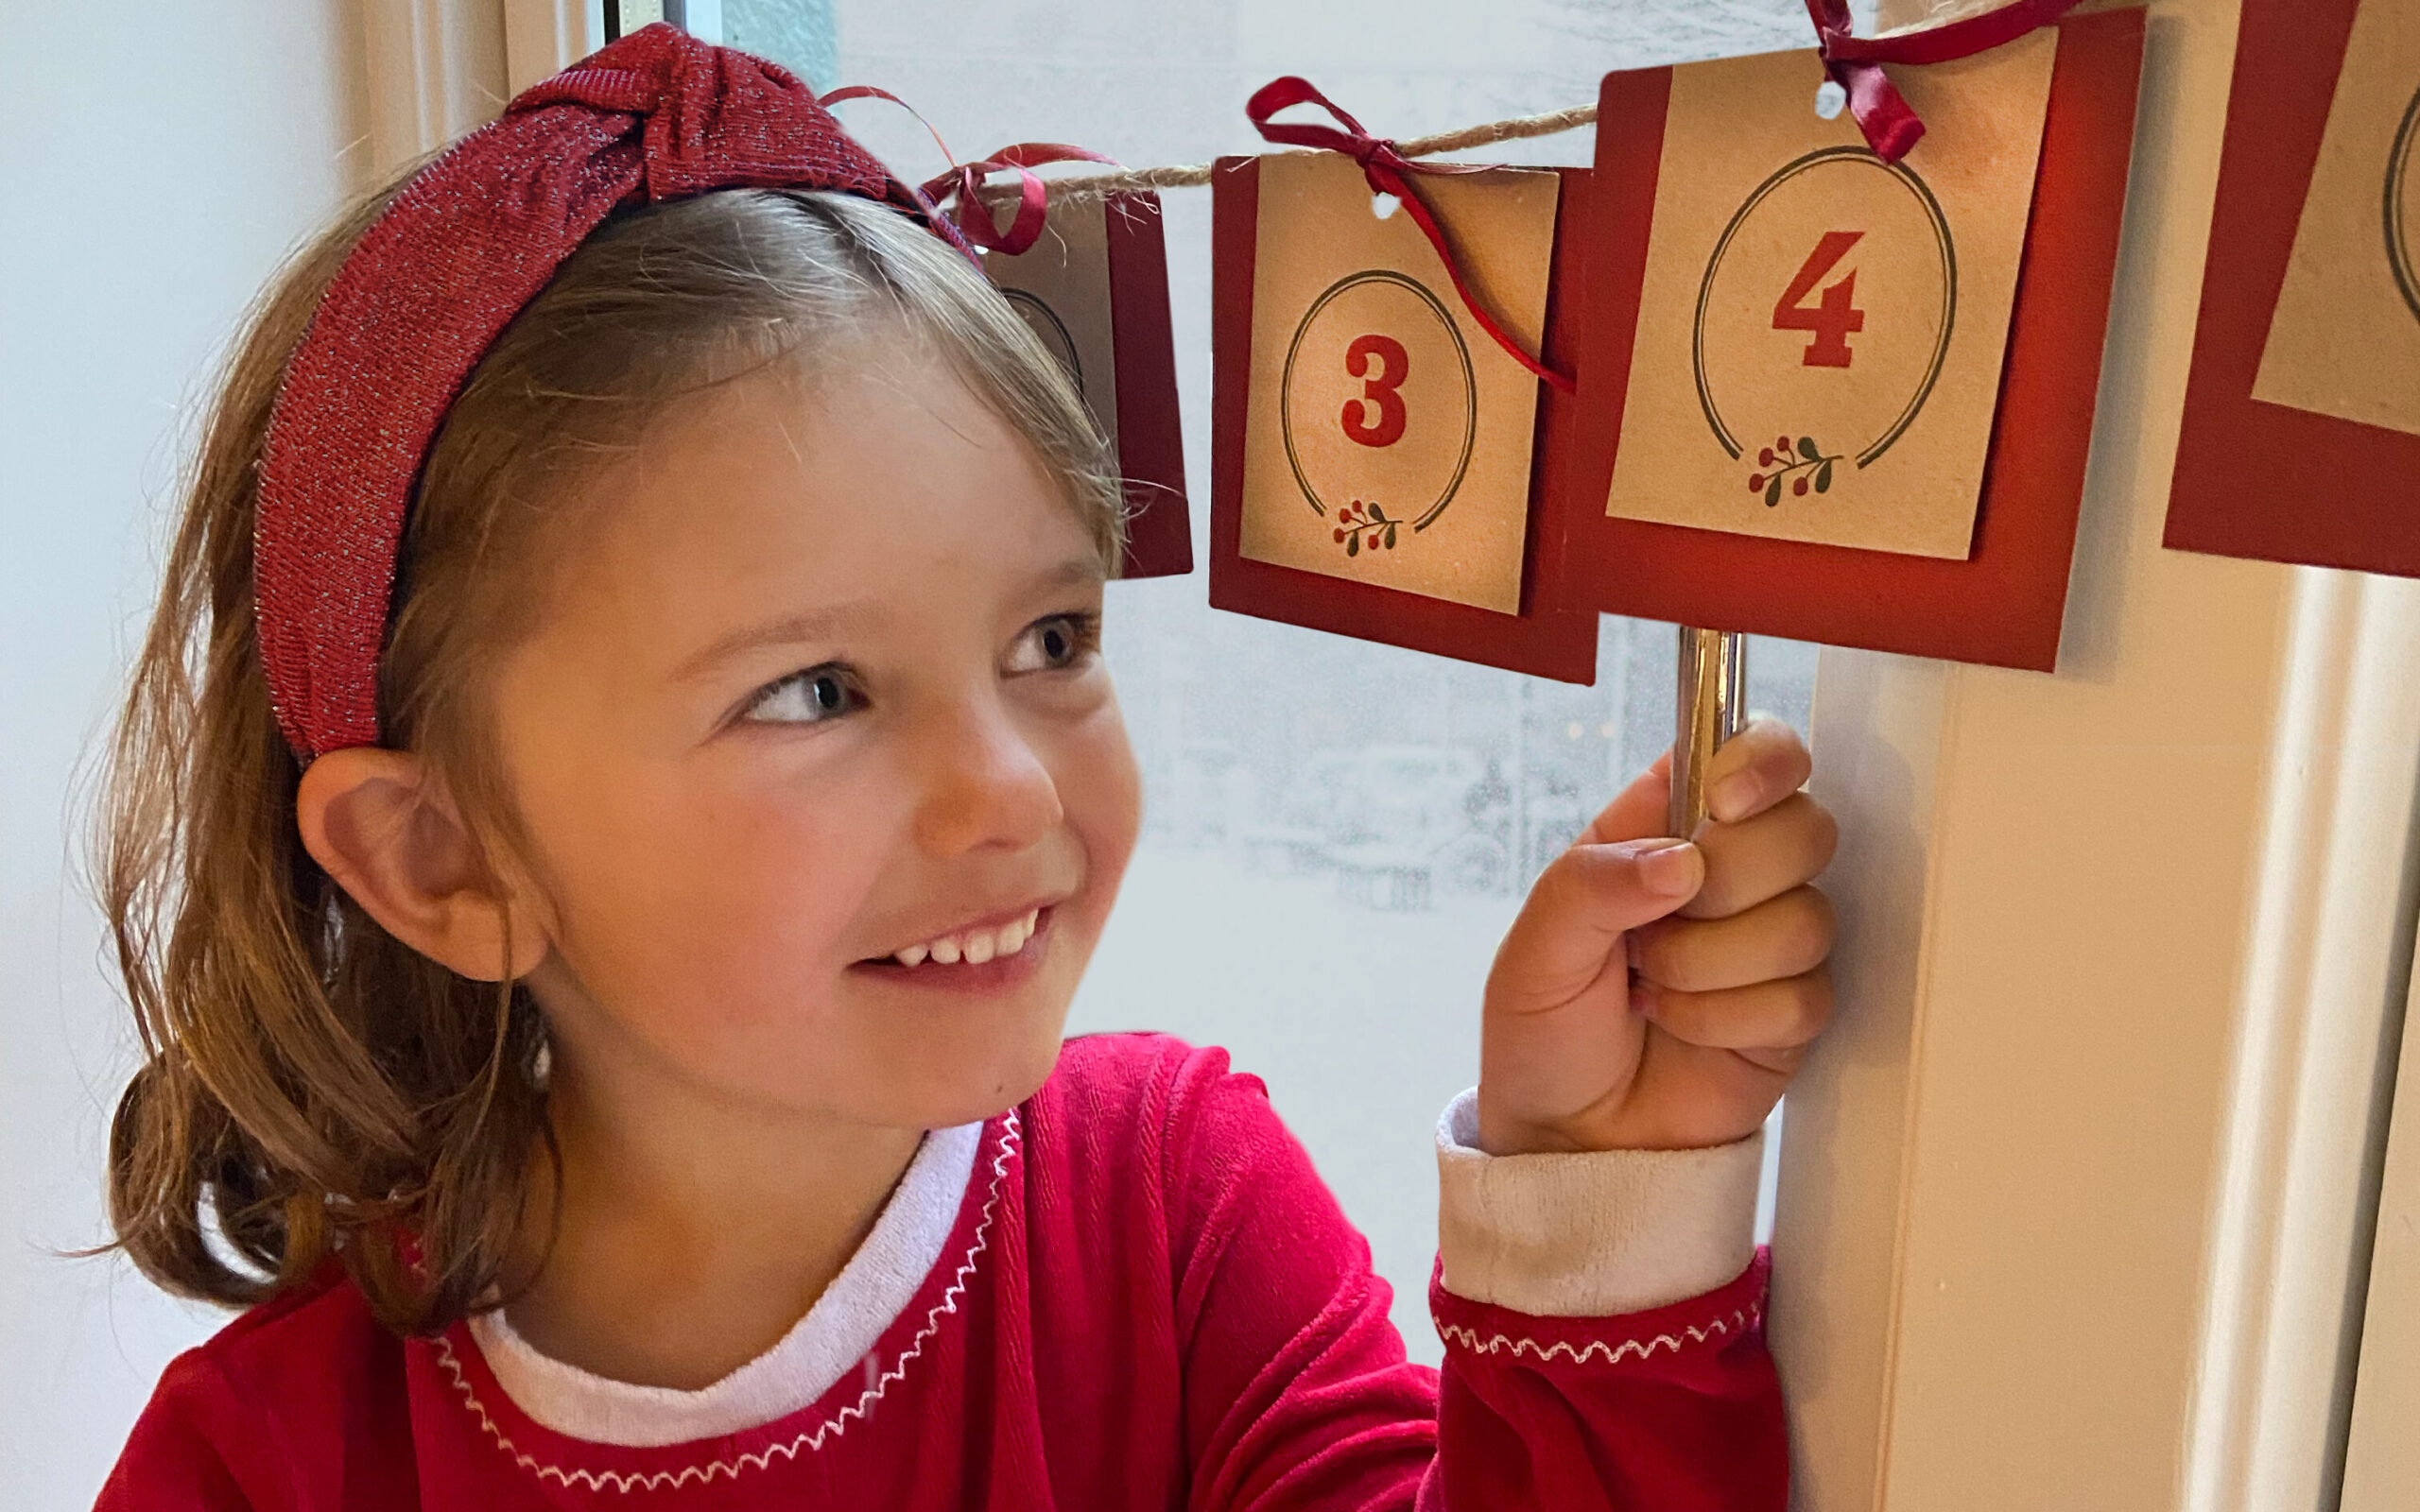 Prøv vår gratis julekalender! Den består av aktiviteter barna vil huske som gode juleminner.